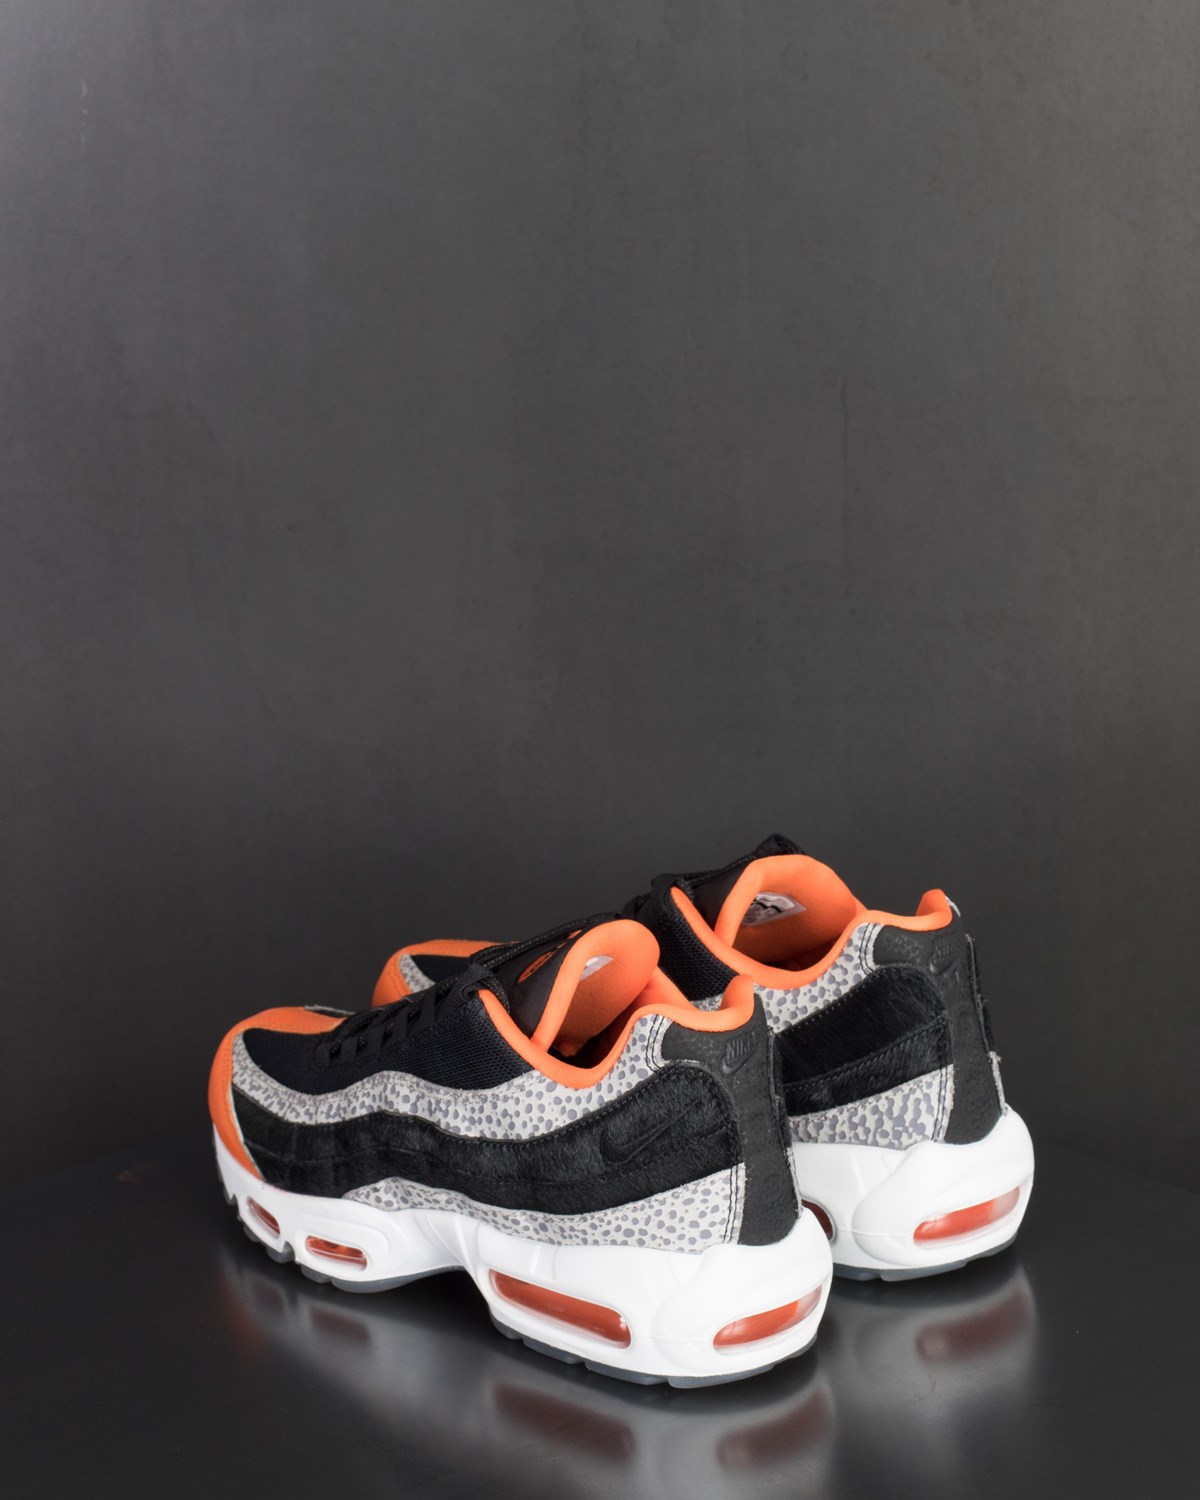 Air Max 95 Nike Footwear Sneakers Black